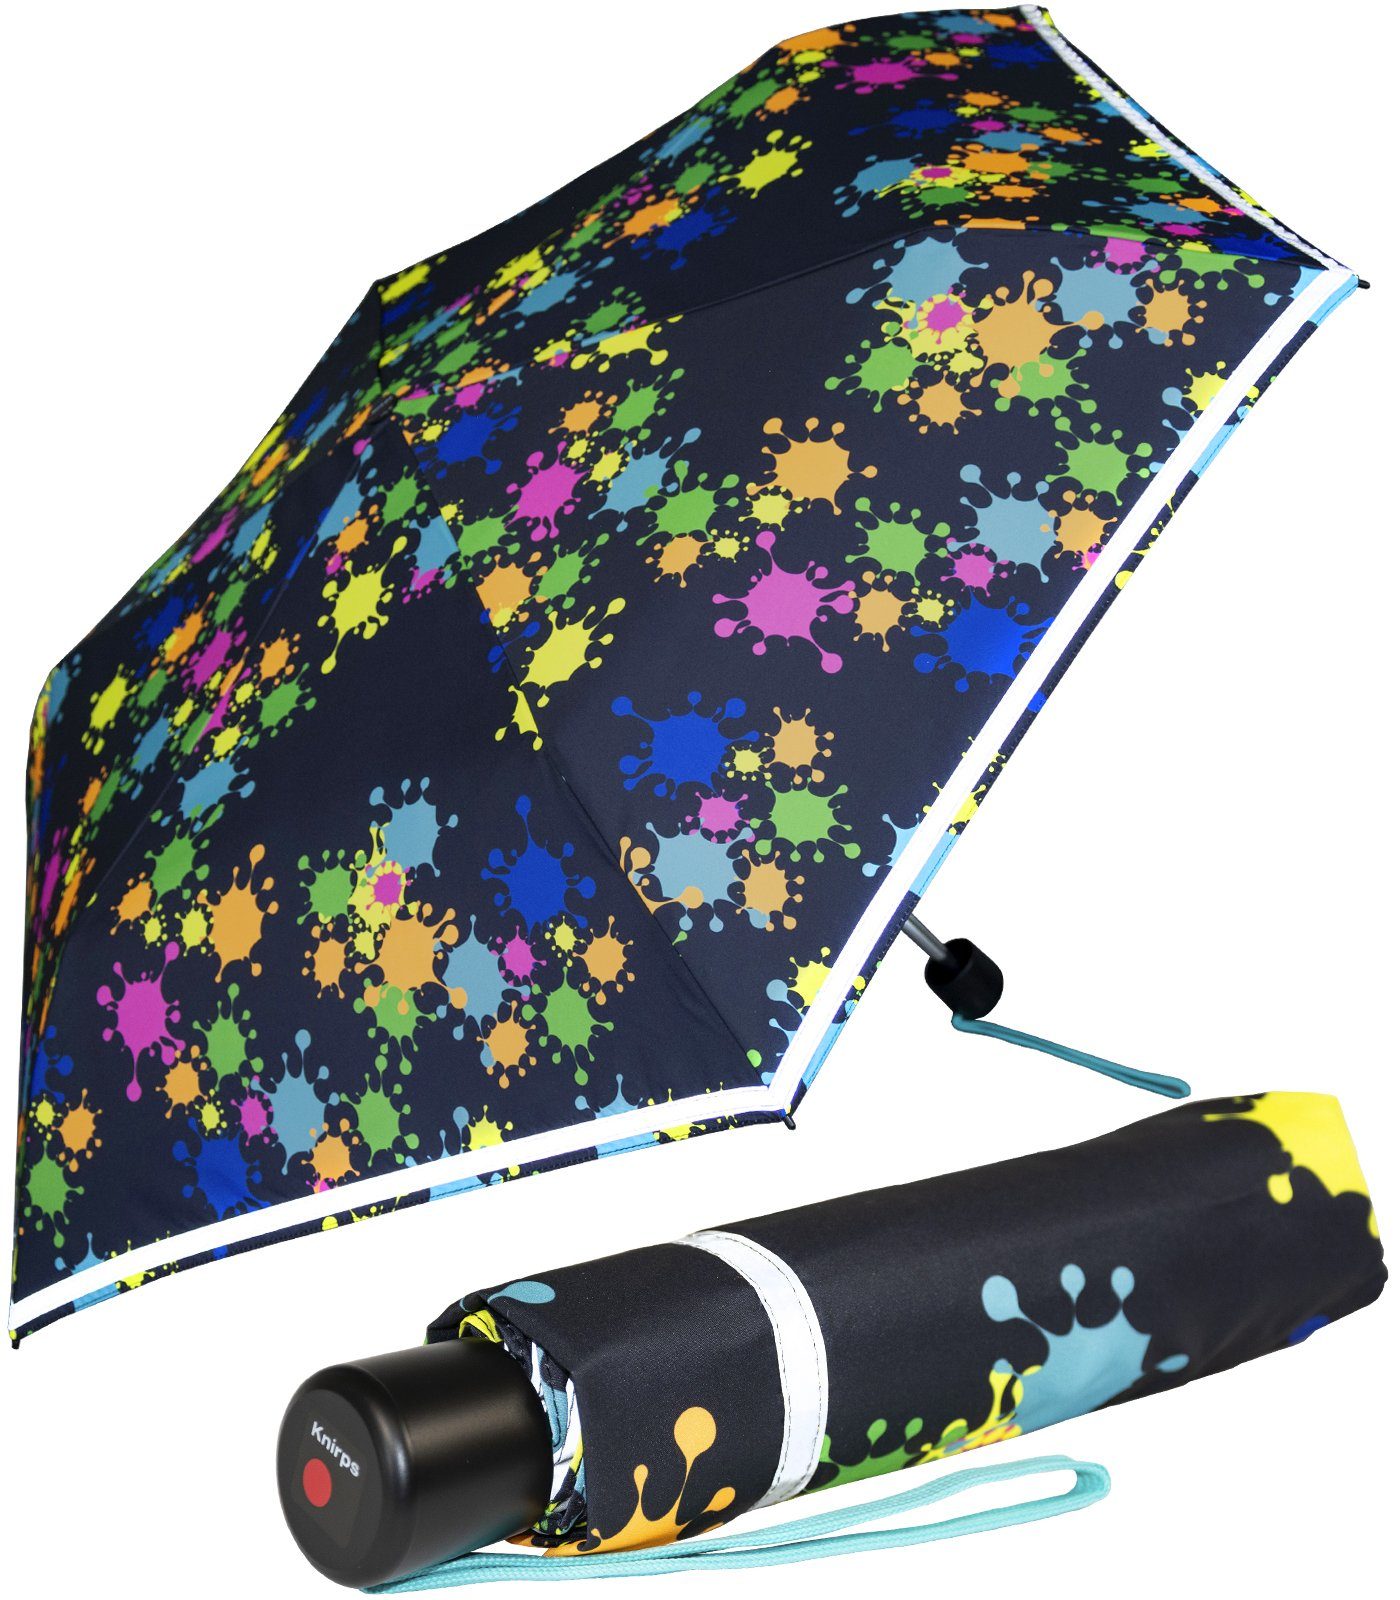 Knirps® Taschenregenschirm Kinderschirm 4Kids reflective mit Reflexborte, Sicherheit auf dem Schulweg, bunte Paintdrops